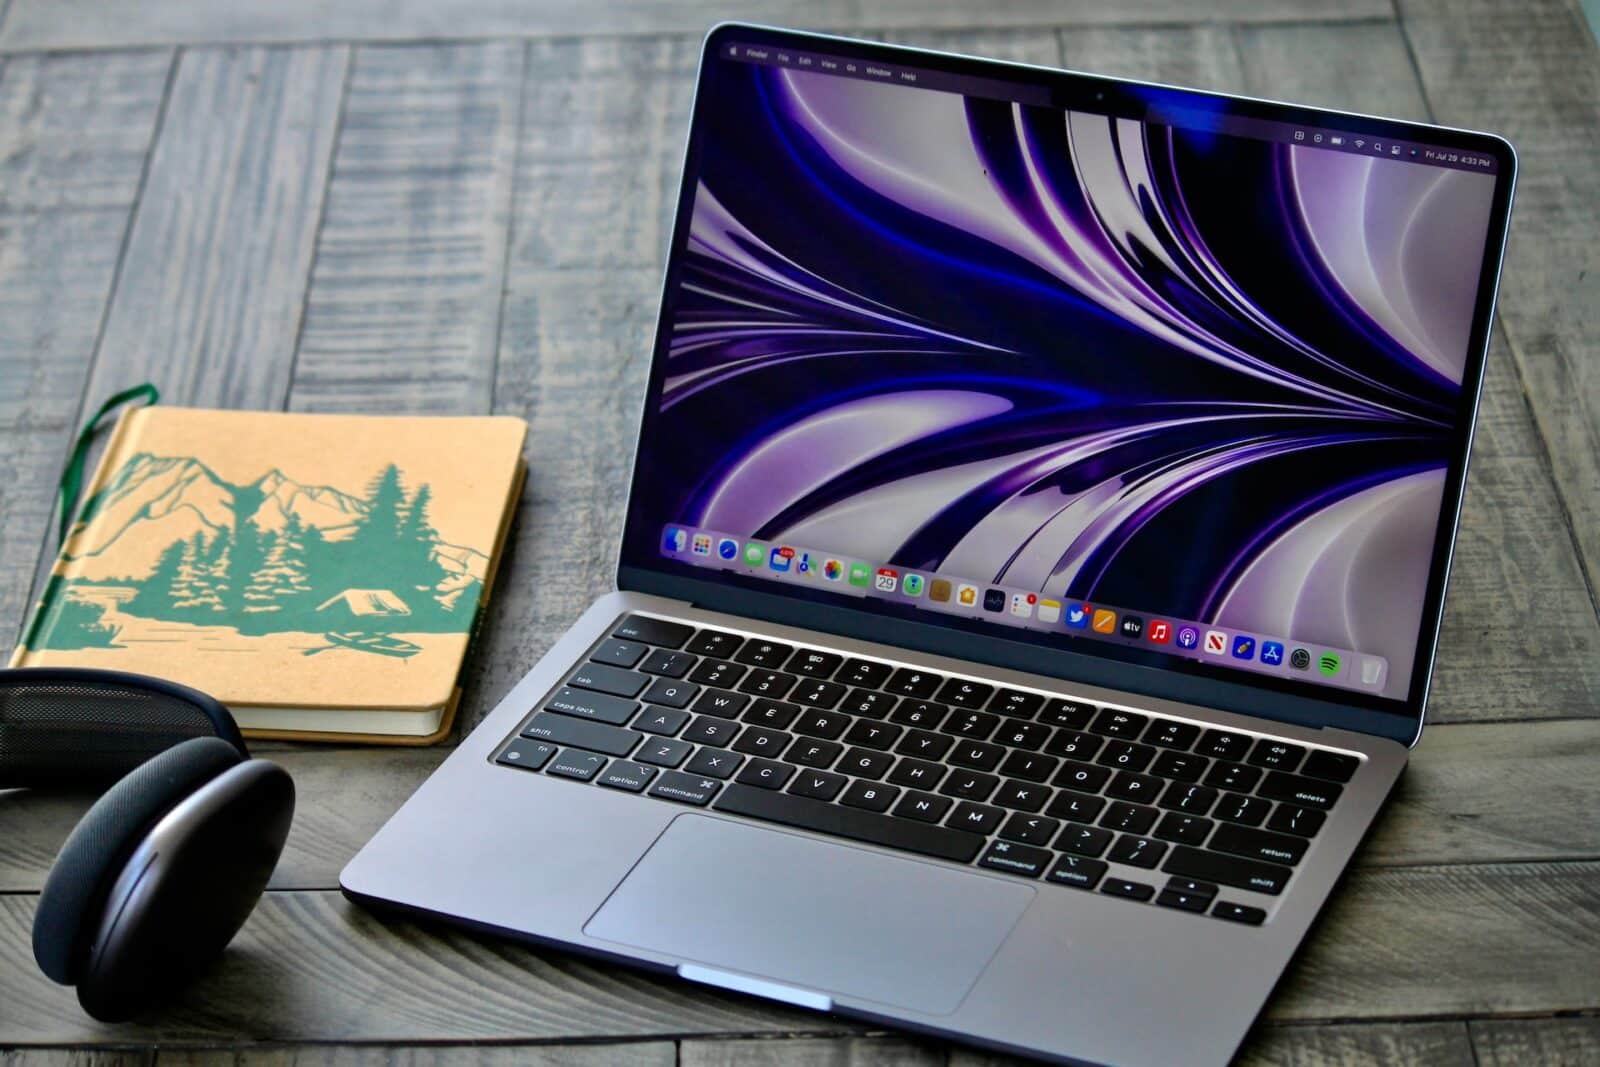 Les meilleures applications pour MacBook Air et MacBook Pro M1/M2 applications